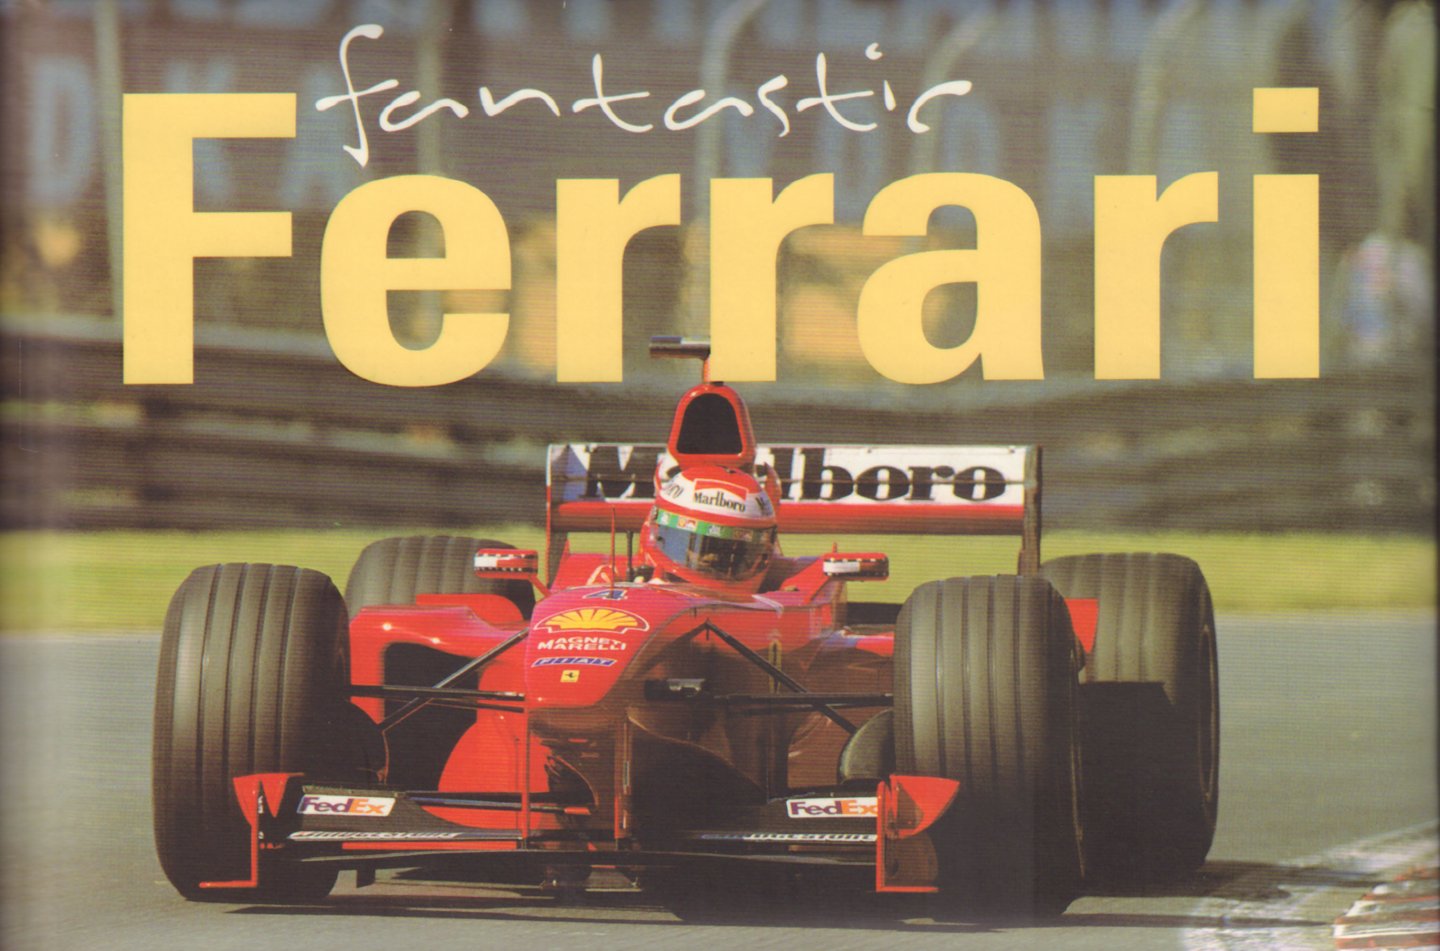 D'Alessio, Paolo - Fantastic Ferrari ( Rijkelijk geillustreerd met vele foto`s o.a. historische in kleur en zwart - wit), kleine hardcover, gave staat